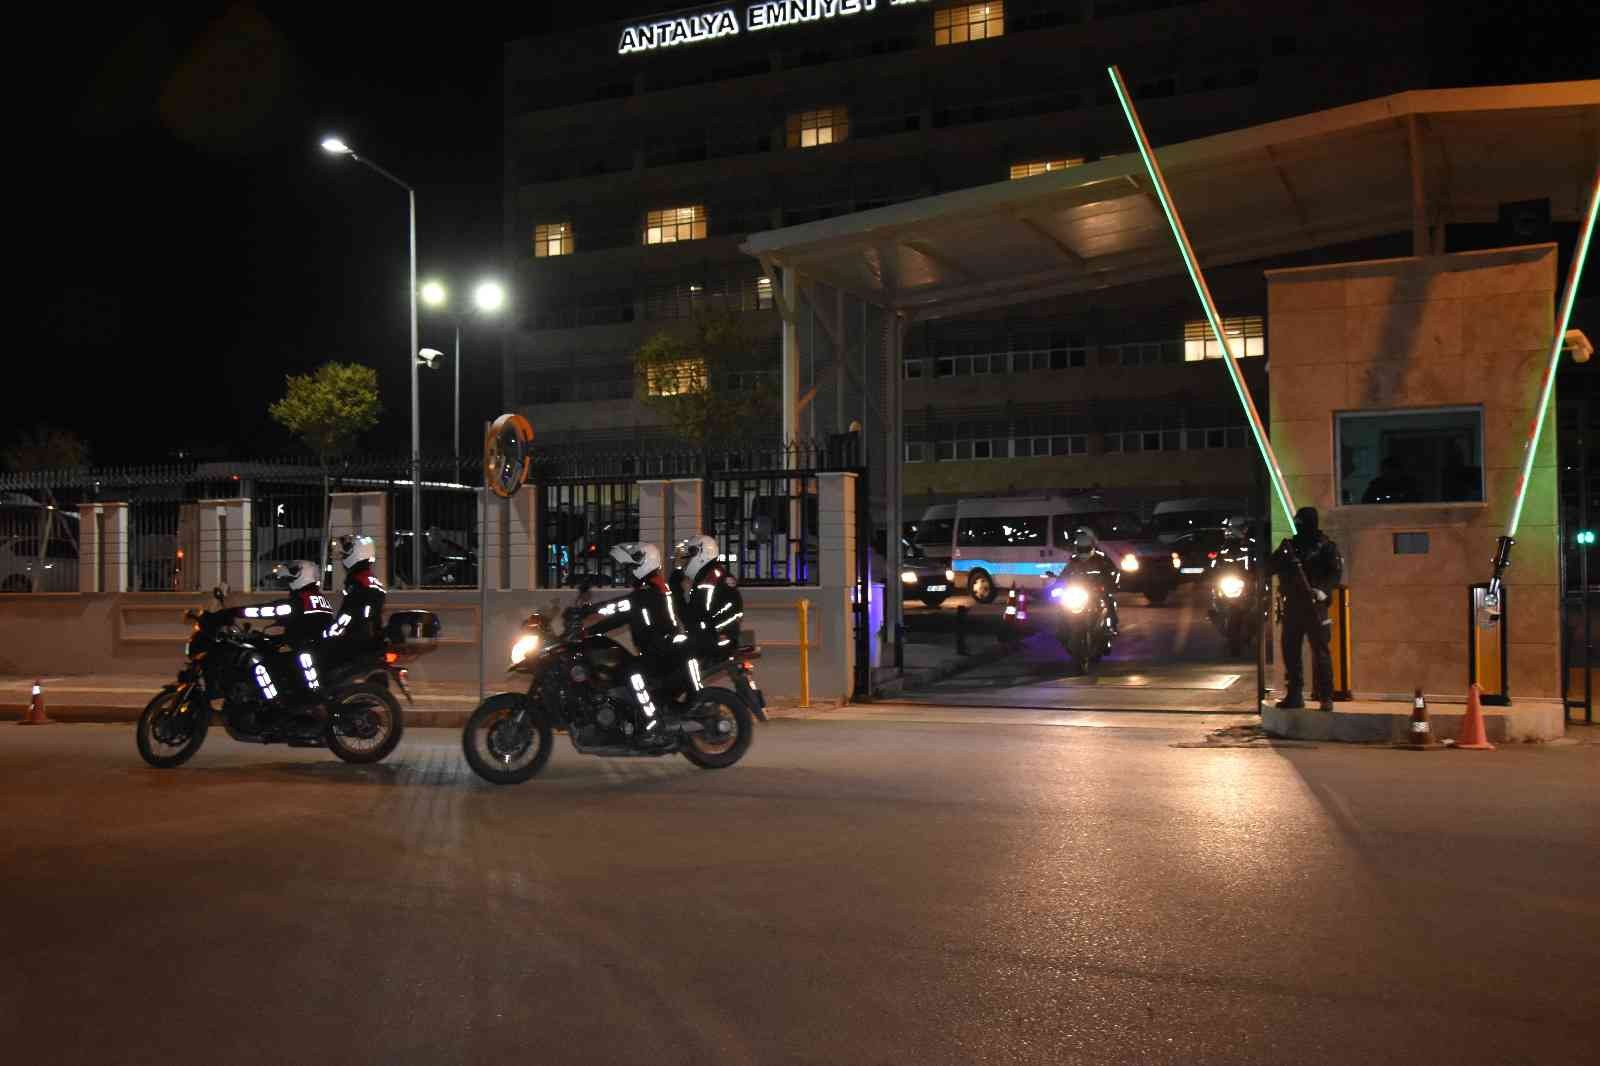 971 polisten yılbaşı öncesi Antalya’da ‘Huzur’ uygulaması #antalya